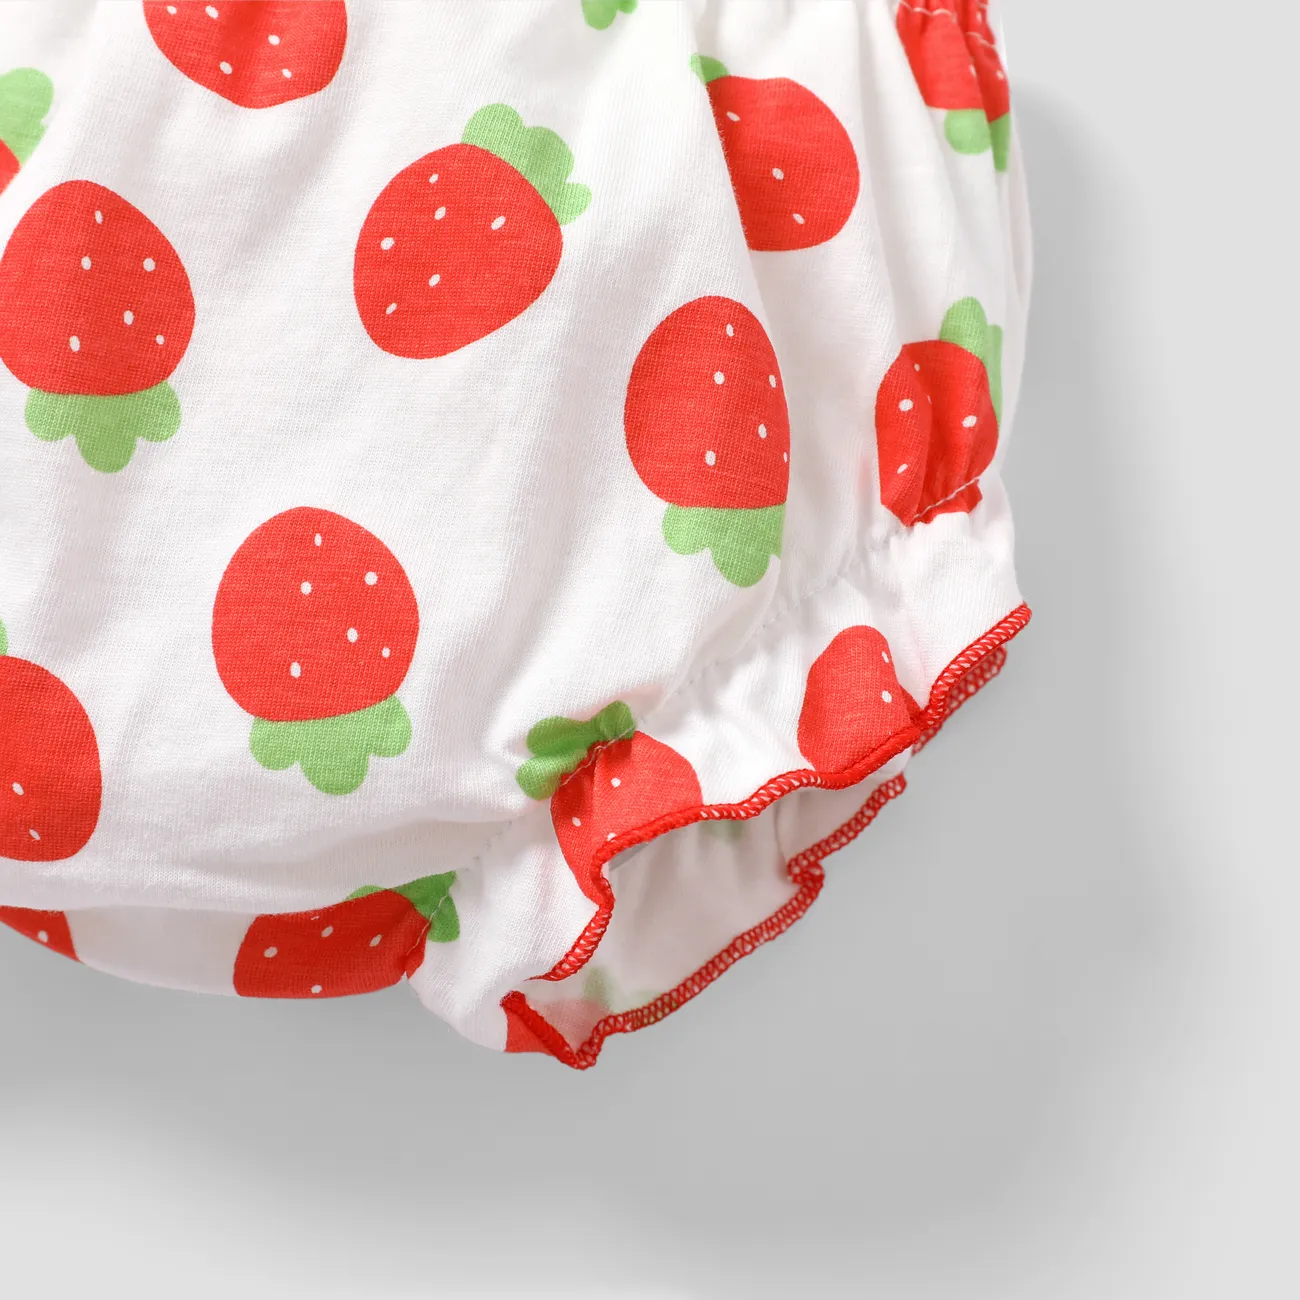 مجموعة ملابس داخلية للفتيات بحواف فطرية ومصنوعة من 100٪ قطن، تحتوي على فواكه وخضروات حلوة. أحمر big image 1